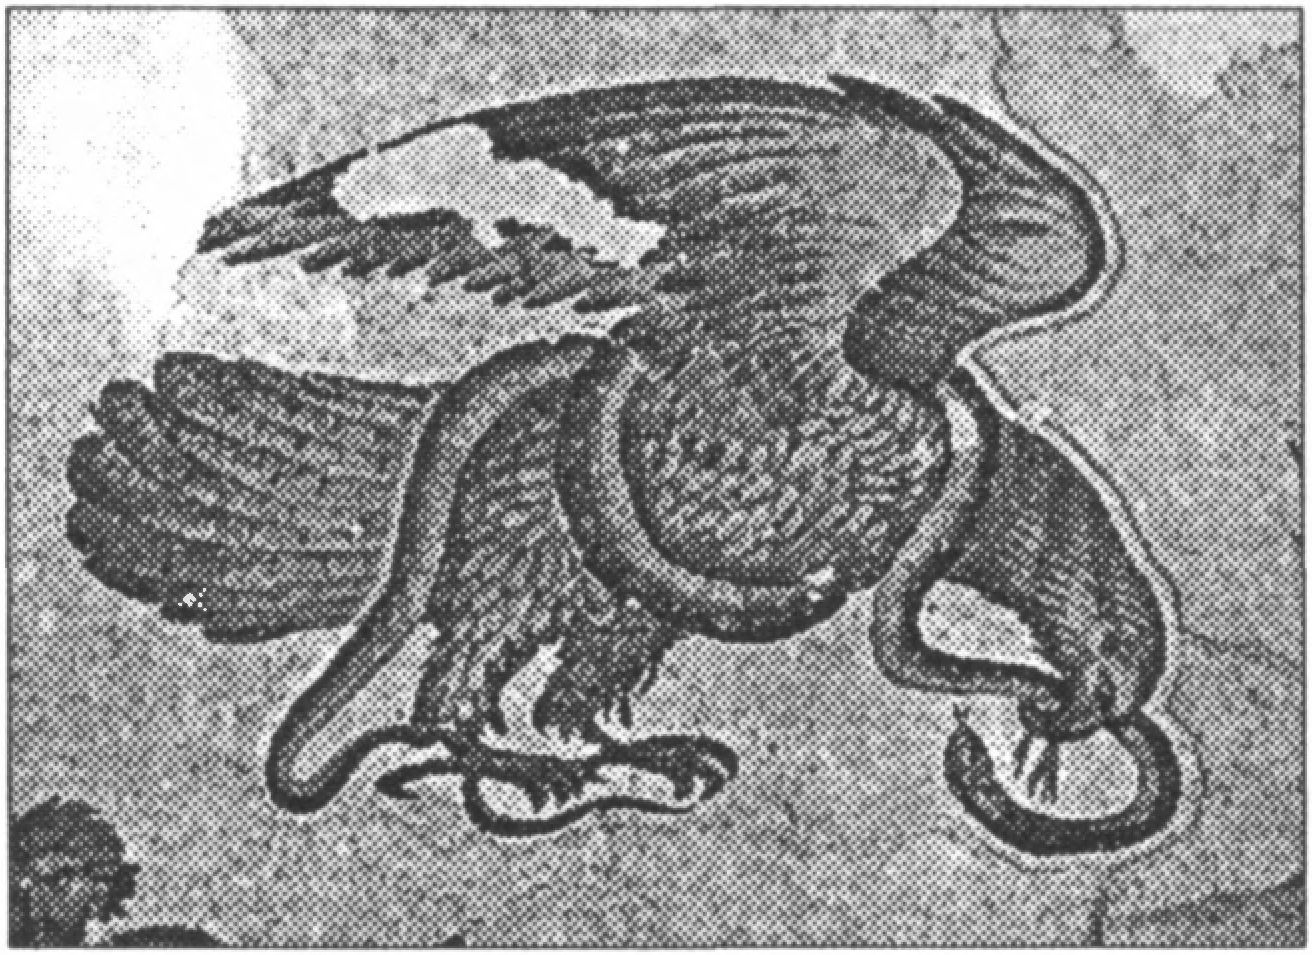 Ил. 159. Поединок орла со змеей. Мозаика. Константинополь. Вторая половина VI в. Большой императорский дворец (Стамбул, Турция)